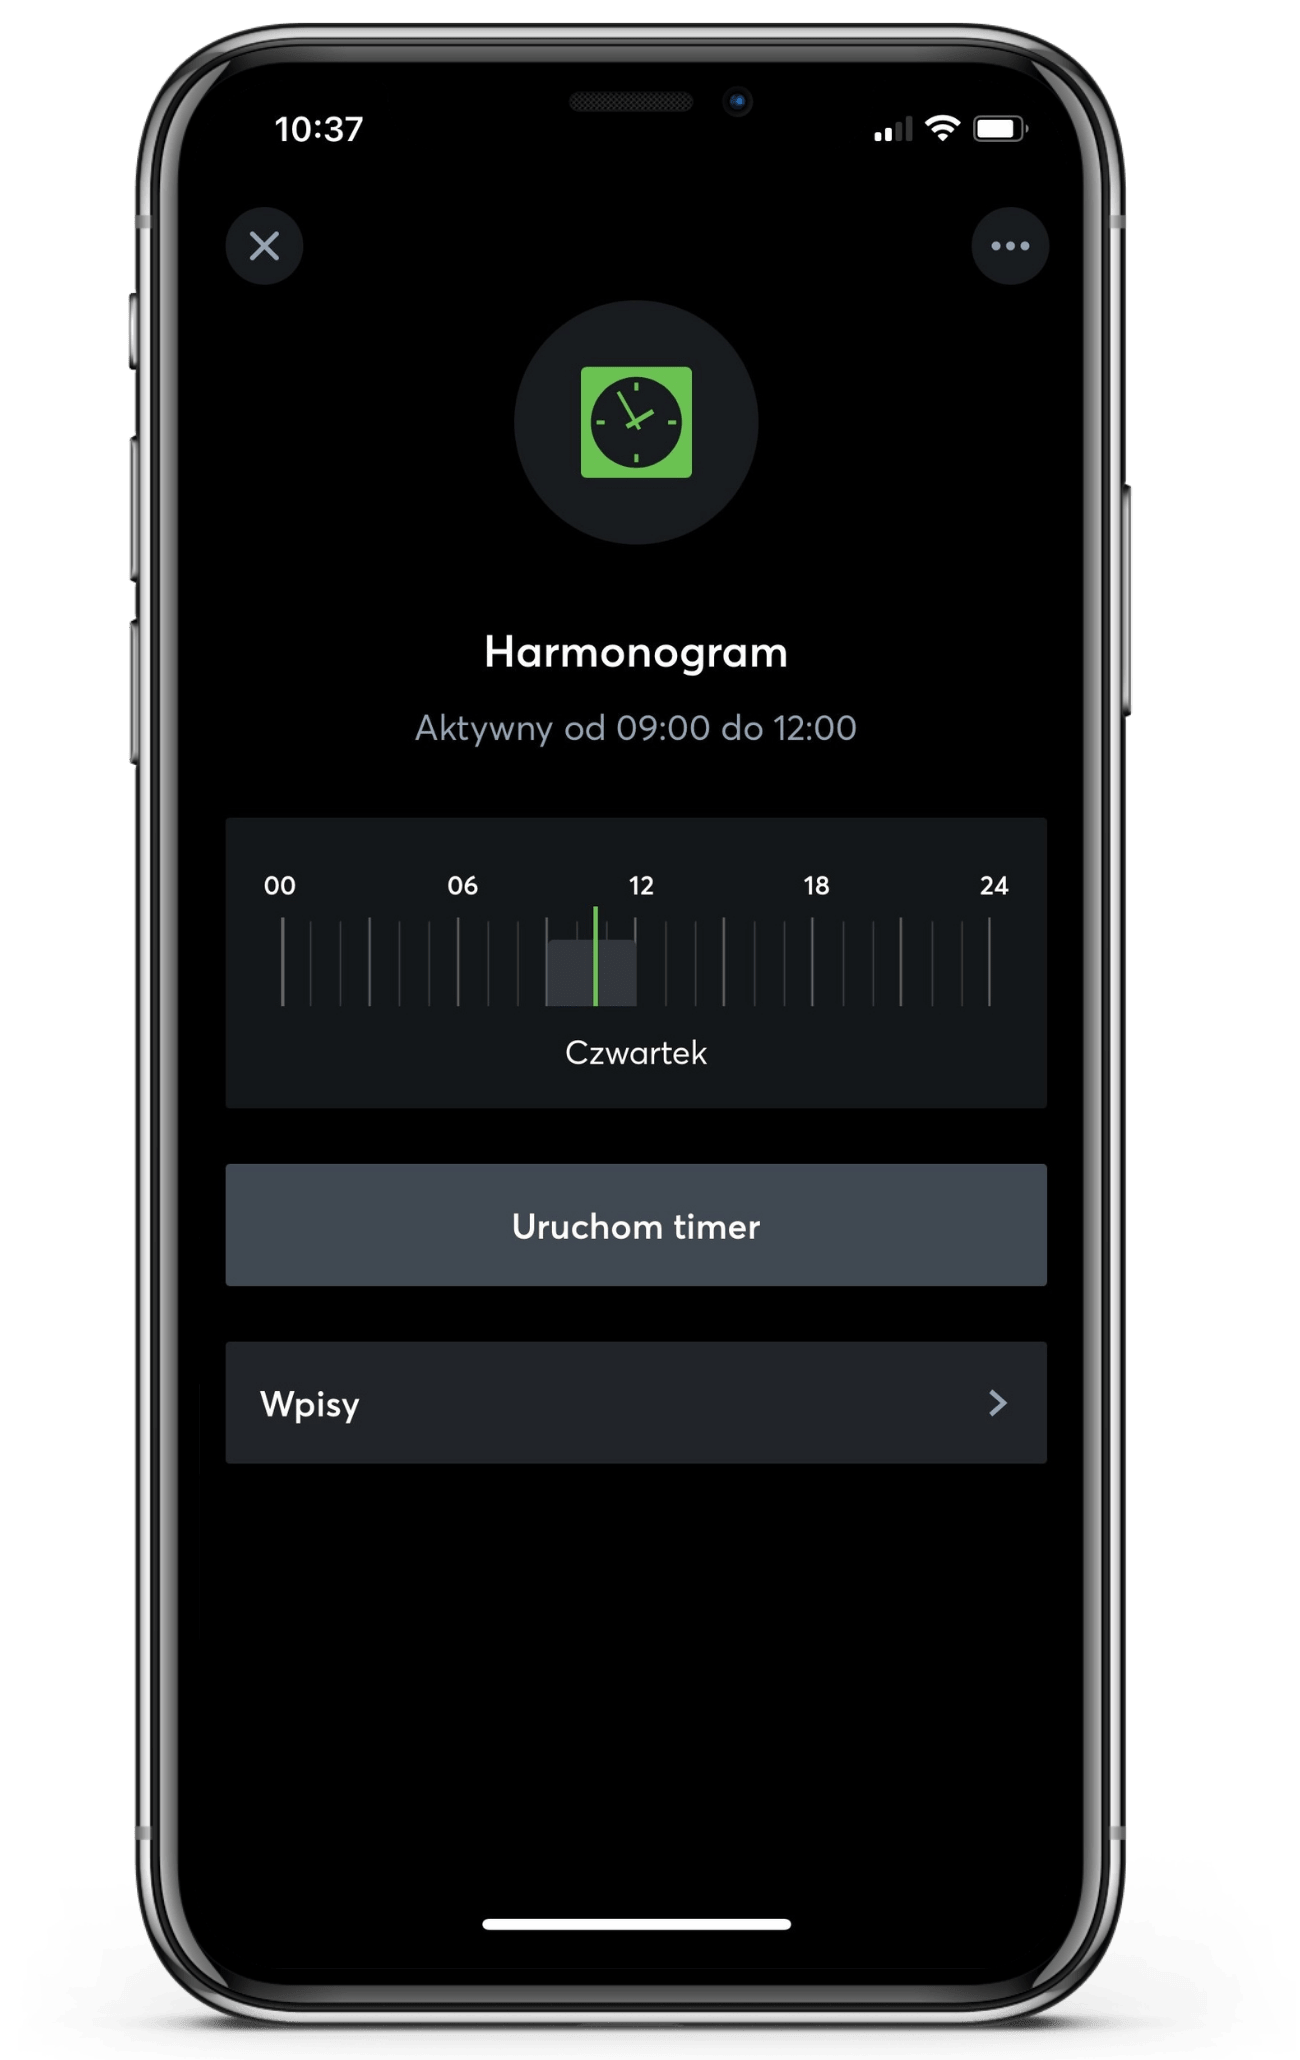 Harmonogram w aplikacji Loxone